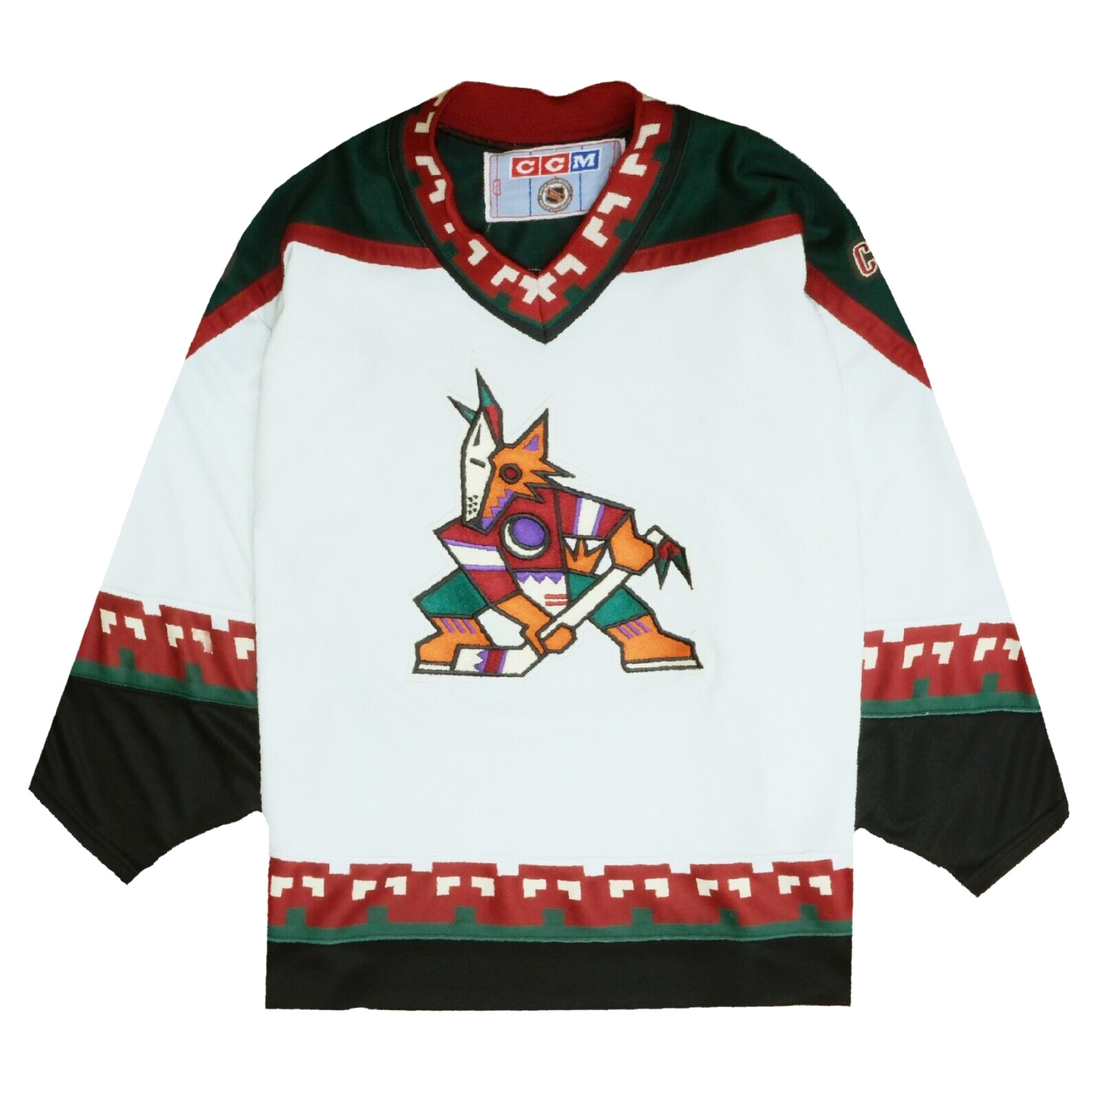 Vintage 90s NHL Starter Arizona Phoenix Coyotes Hockey Jersey Size Large